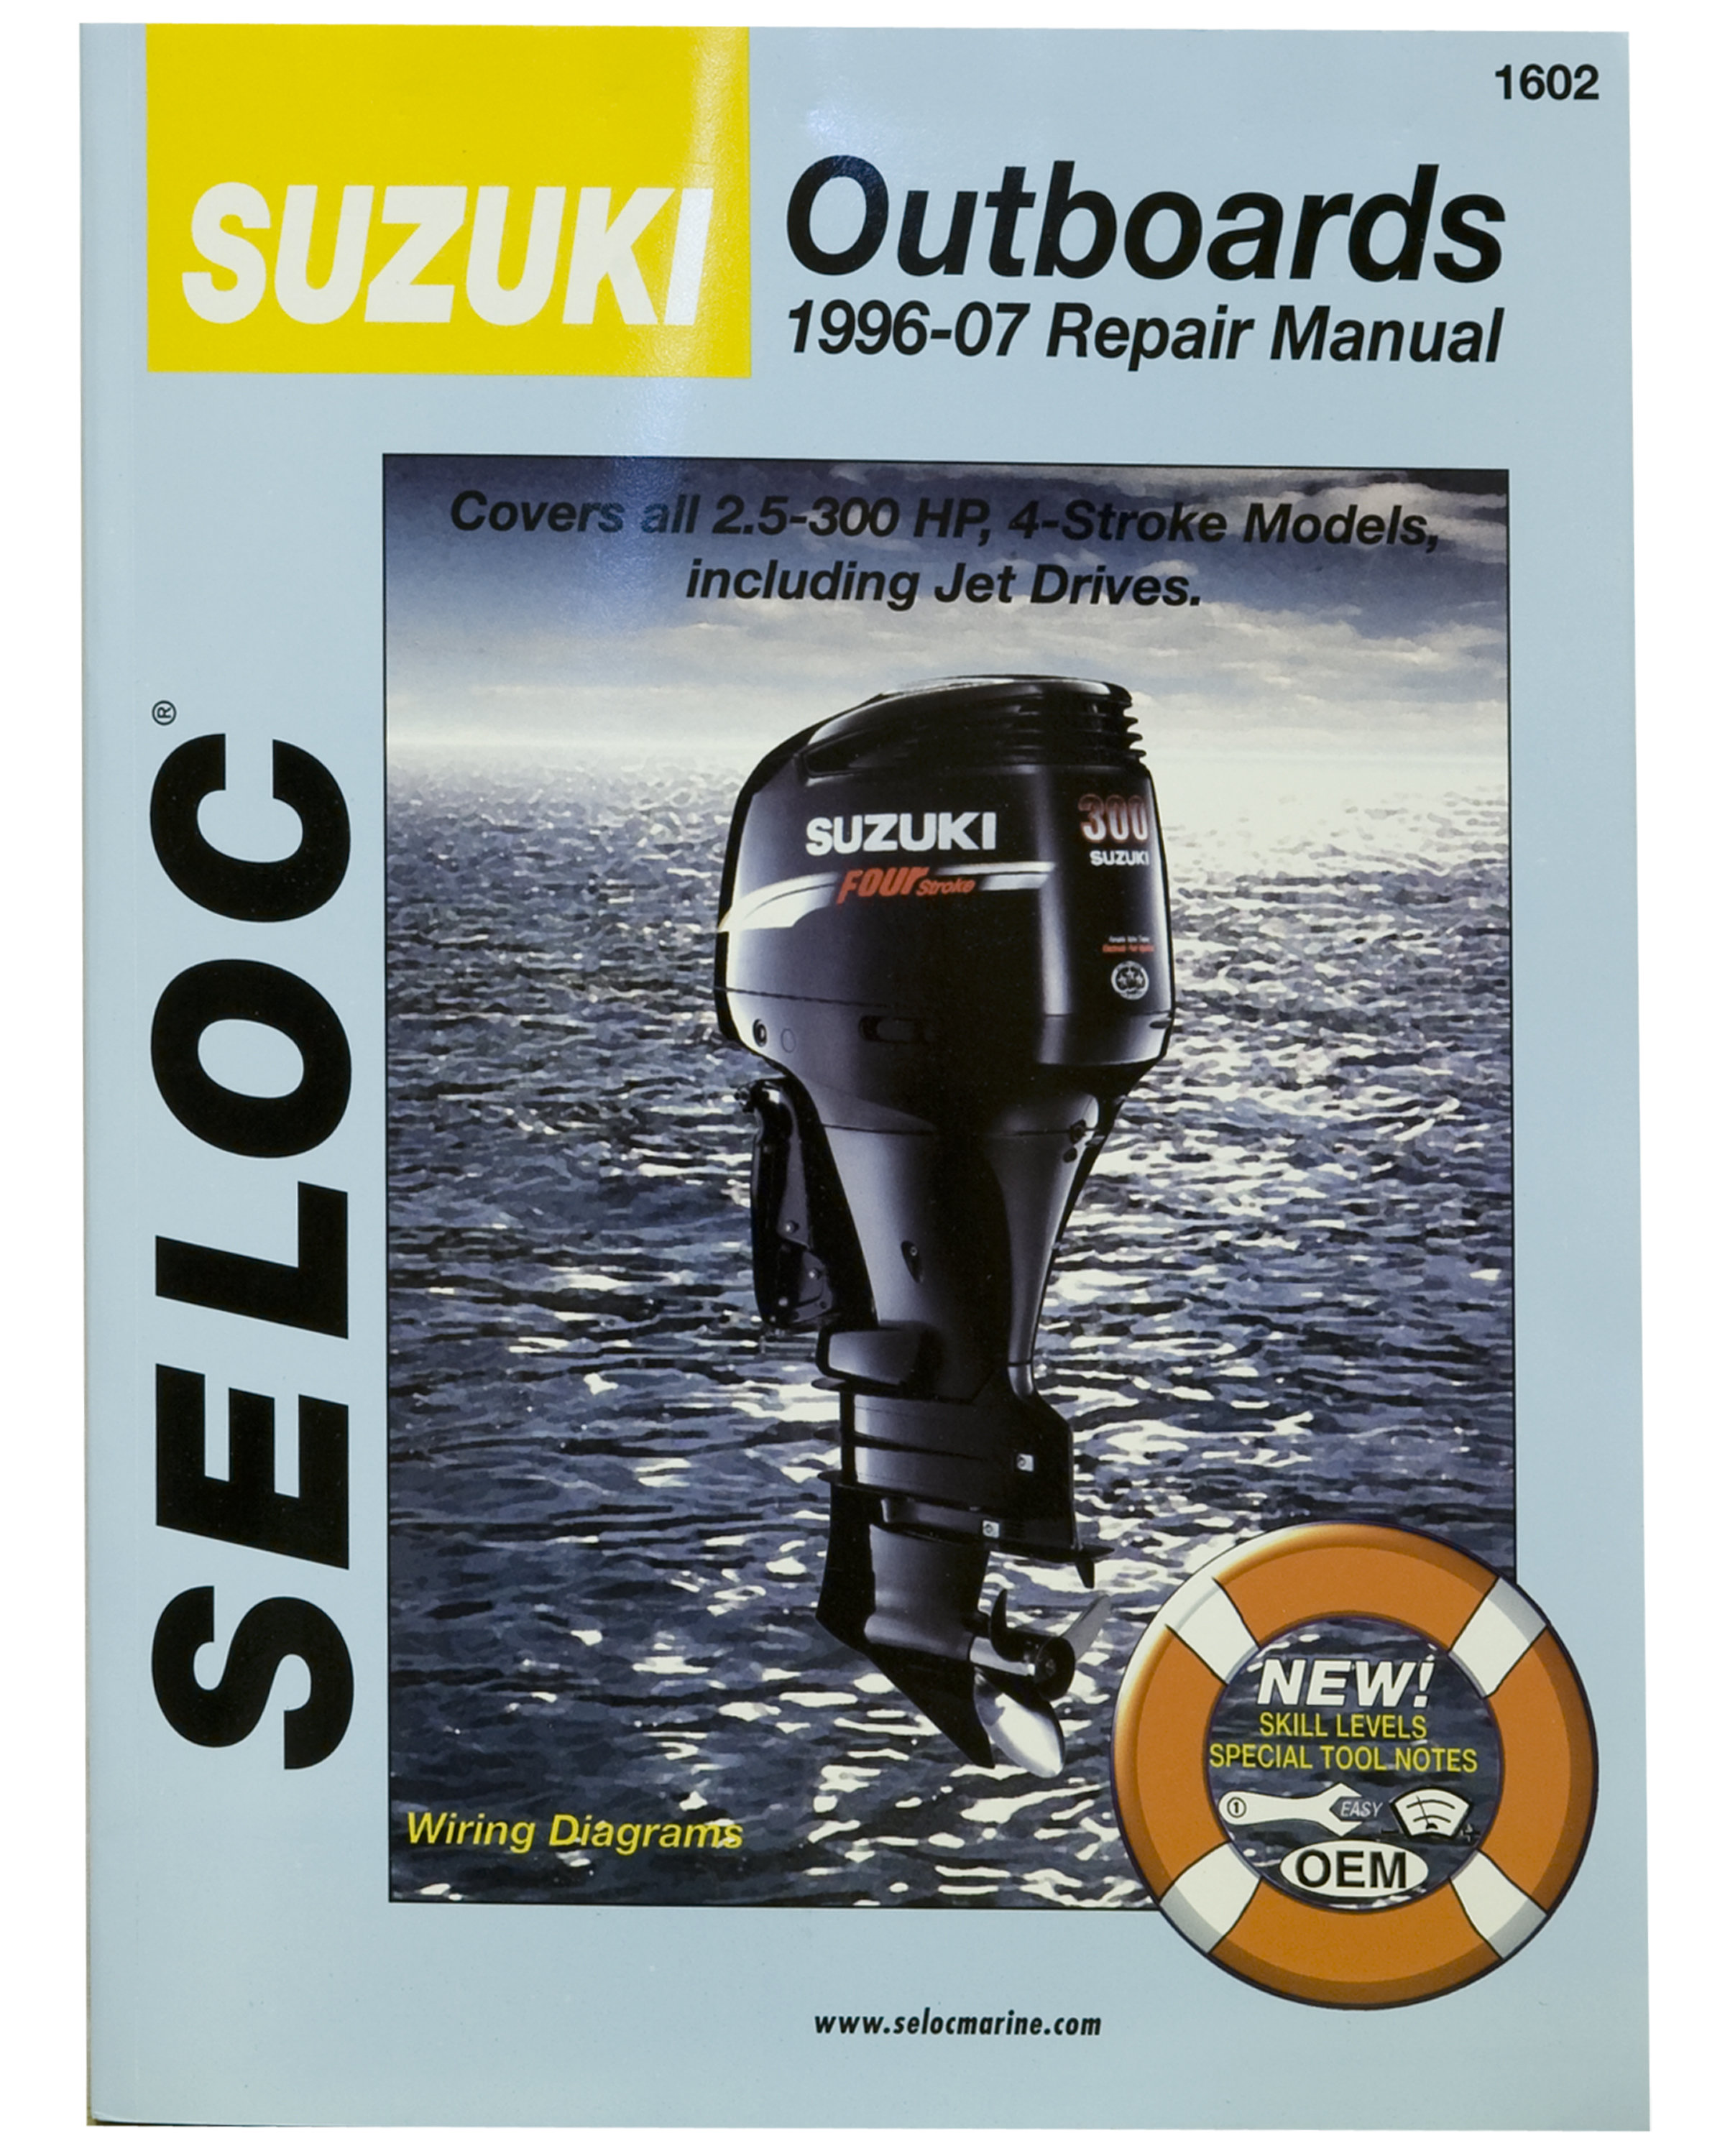 Werkstatthandbuch in englisch für Suzuki